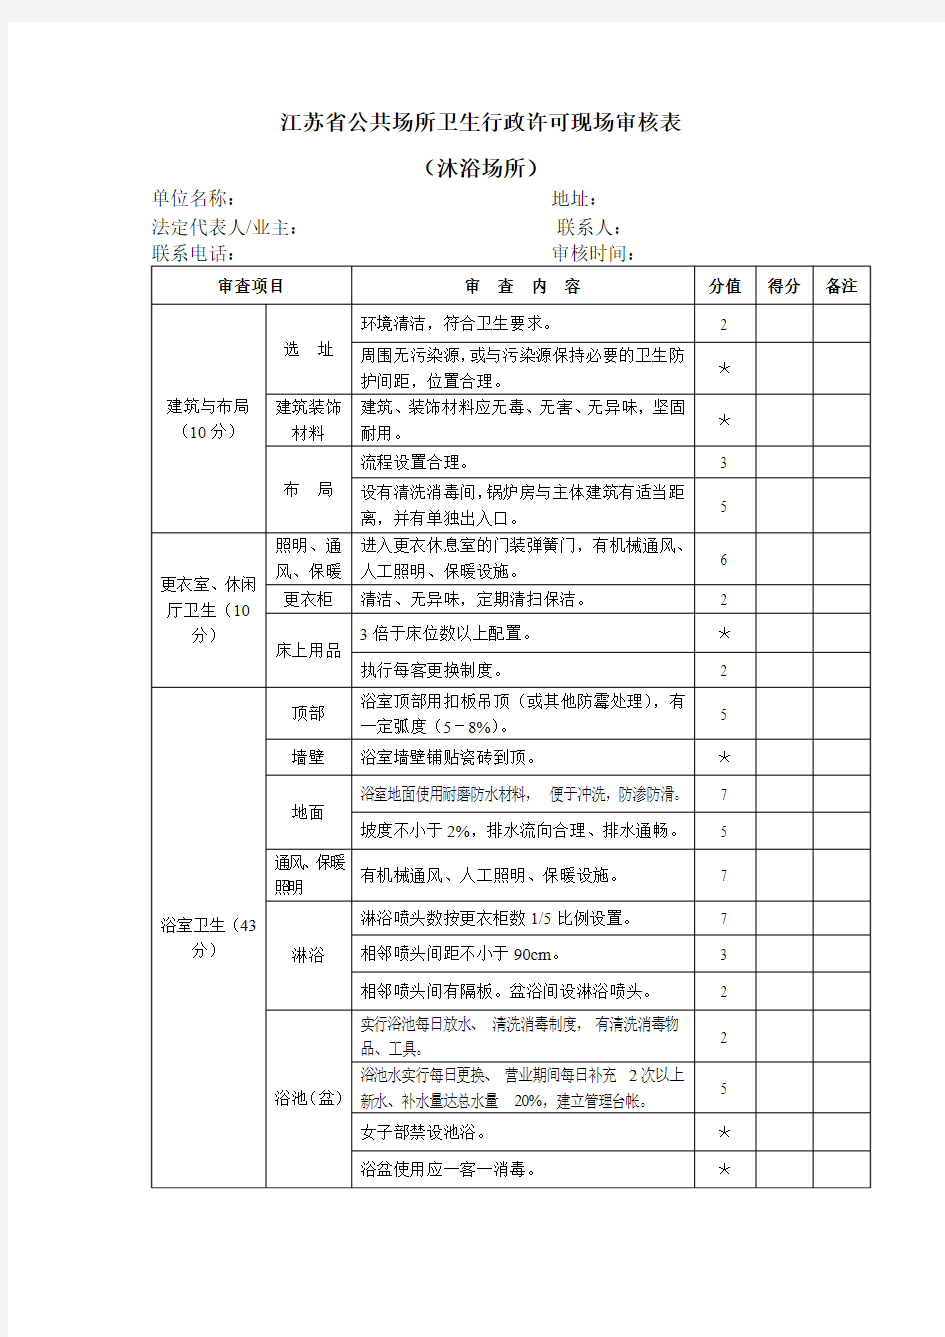 江苏省公共场所卫生行政许可现场审核表